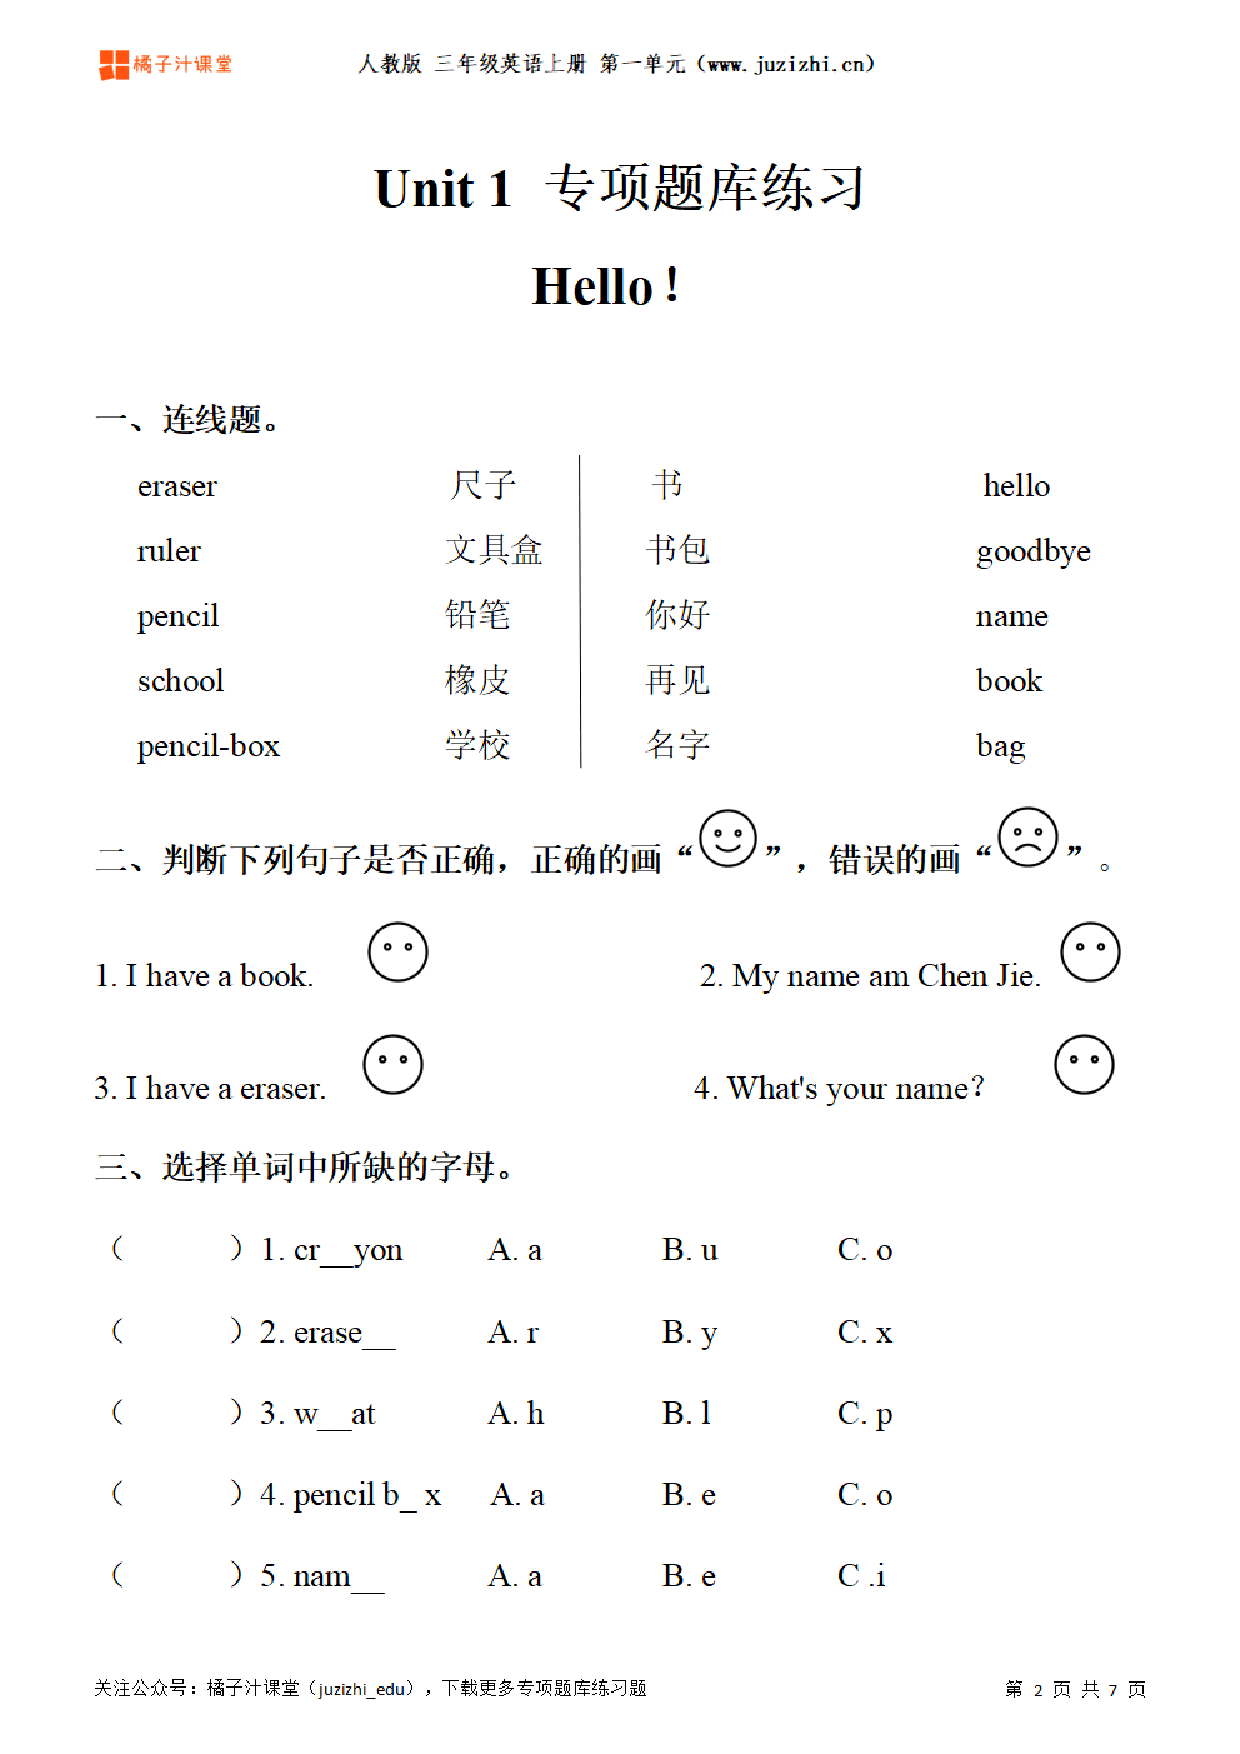 【PEP英语】三年级上册Unit 1《Hello!》专项题库练习